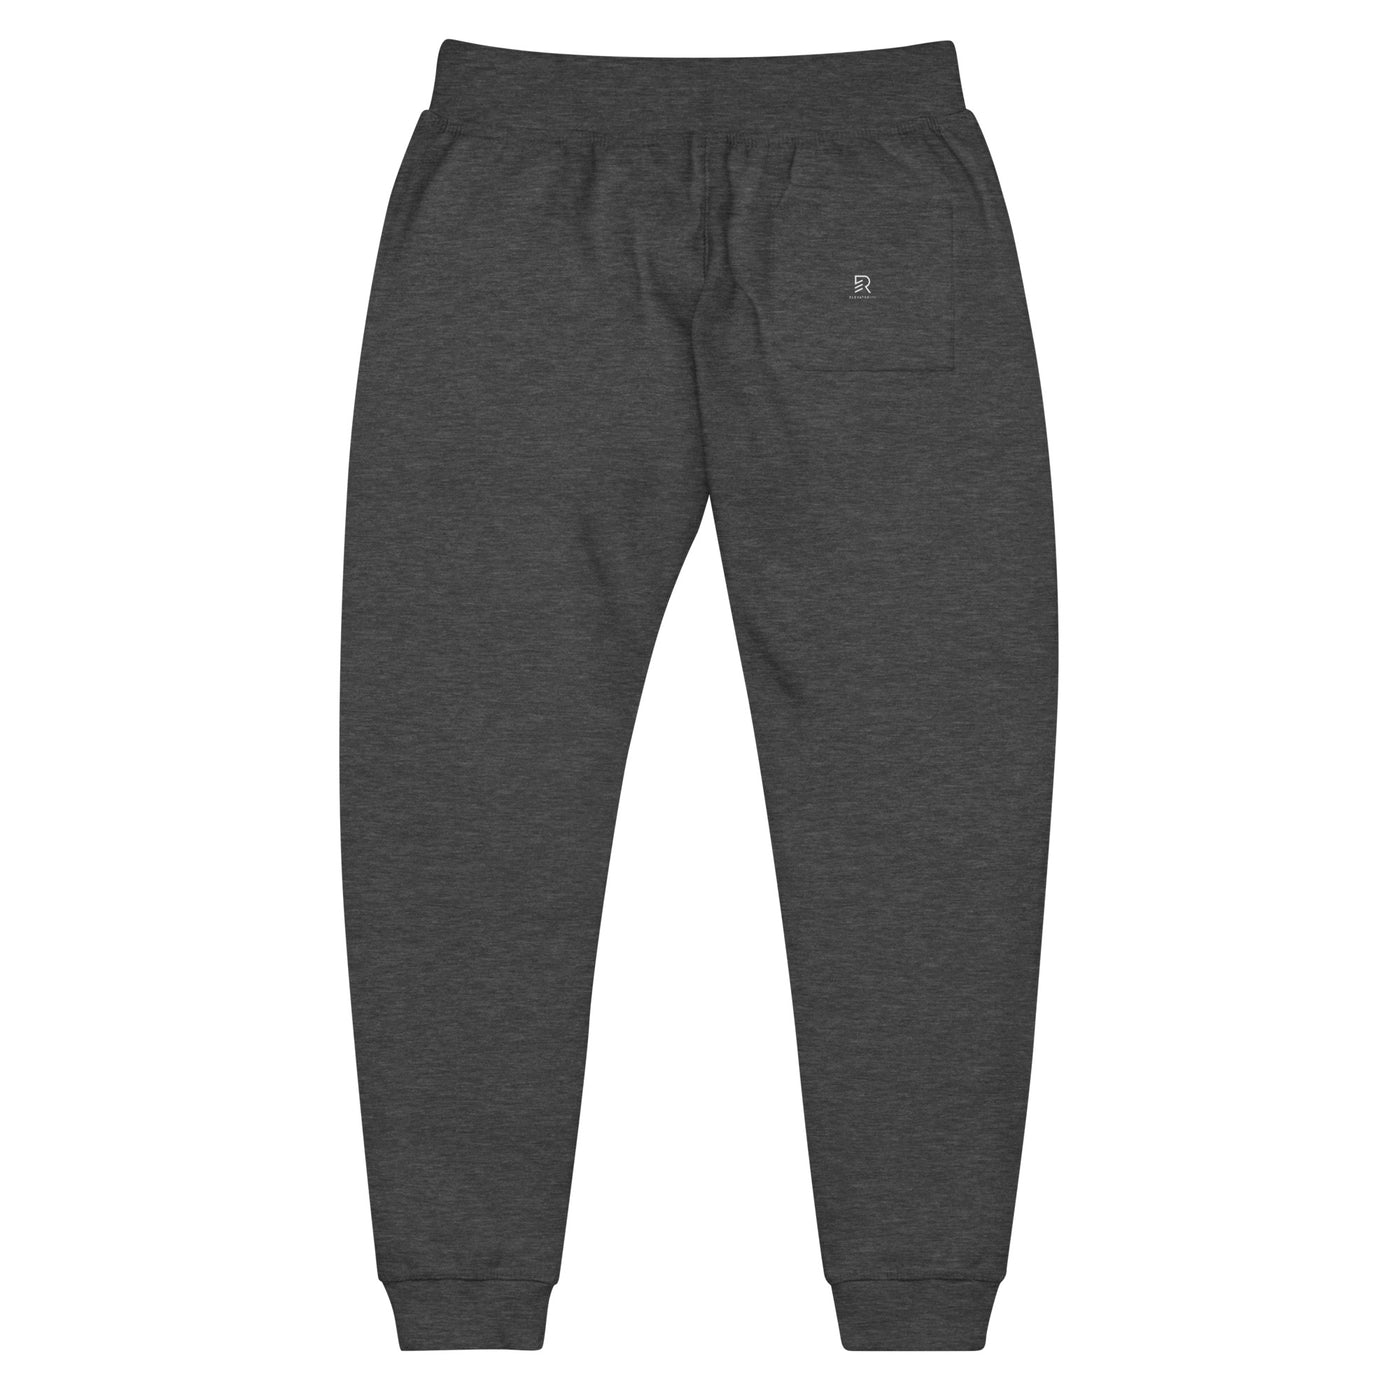 Women's Dark Gray Fleece Sweatpants - Stay Focus Get It Done